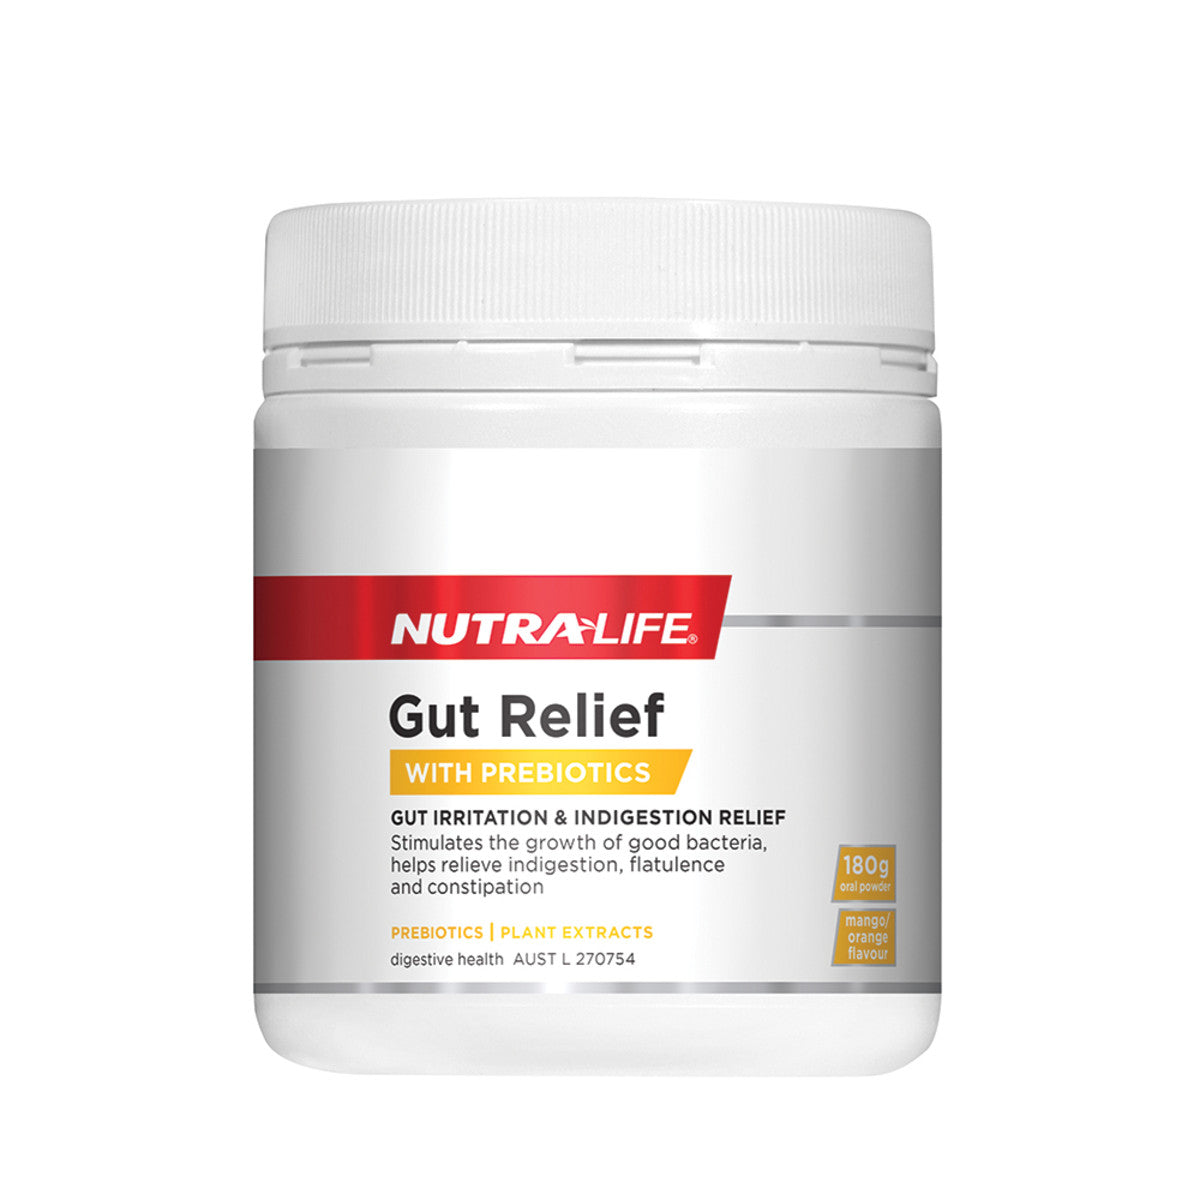 NutraLife - Gut Relief with Probiotics